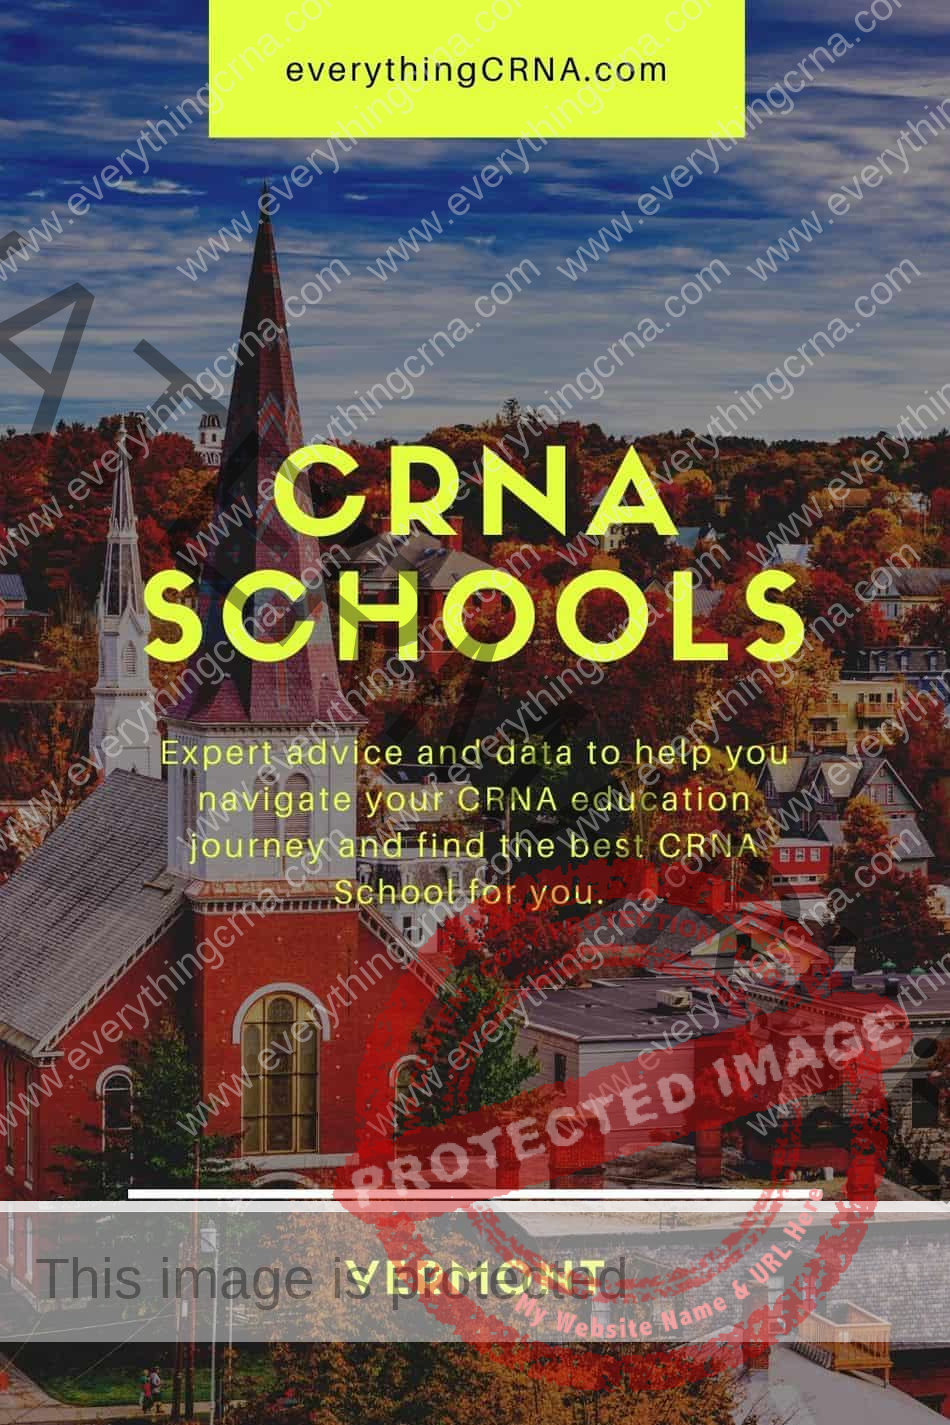 CRNA Schools in Vermont